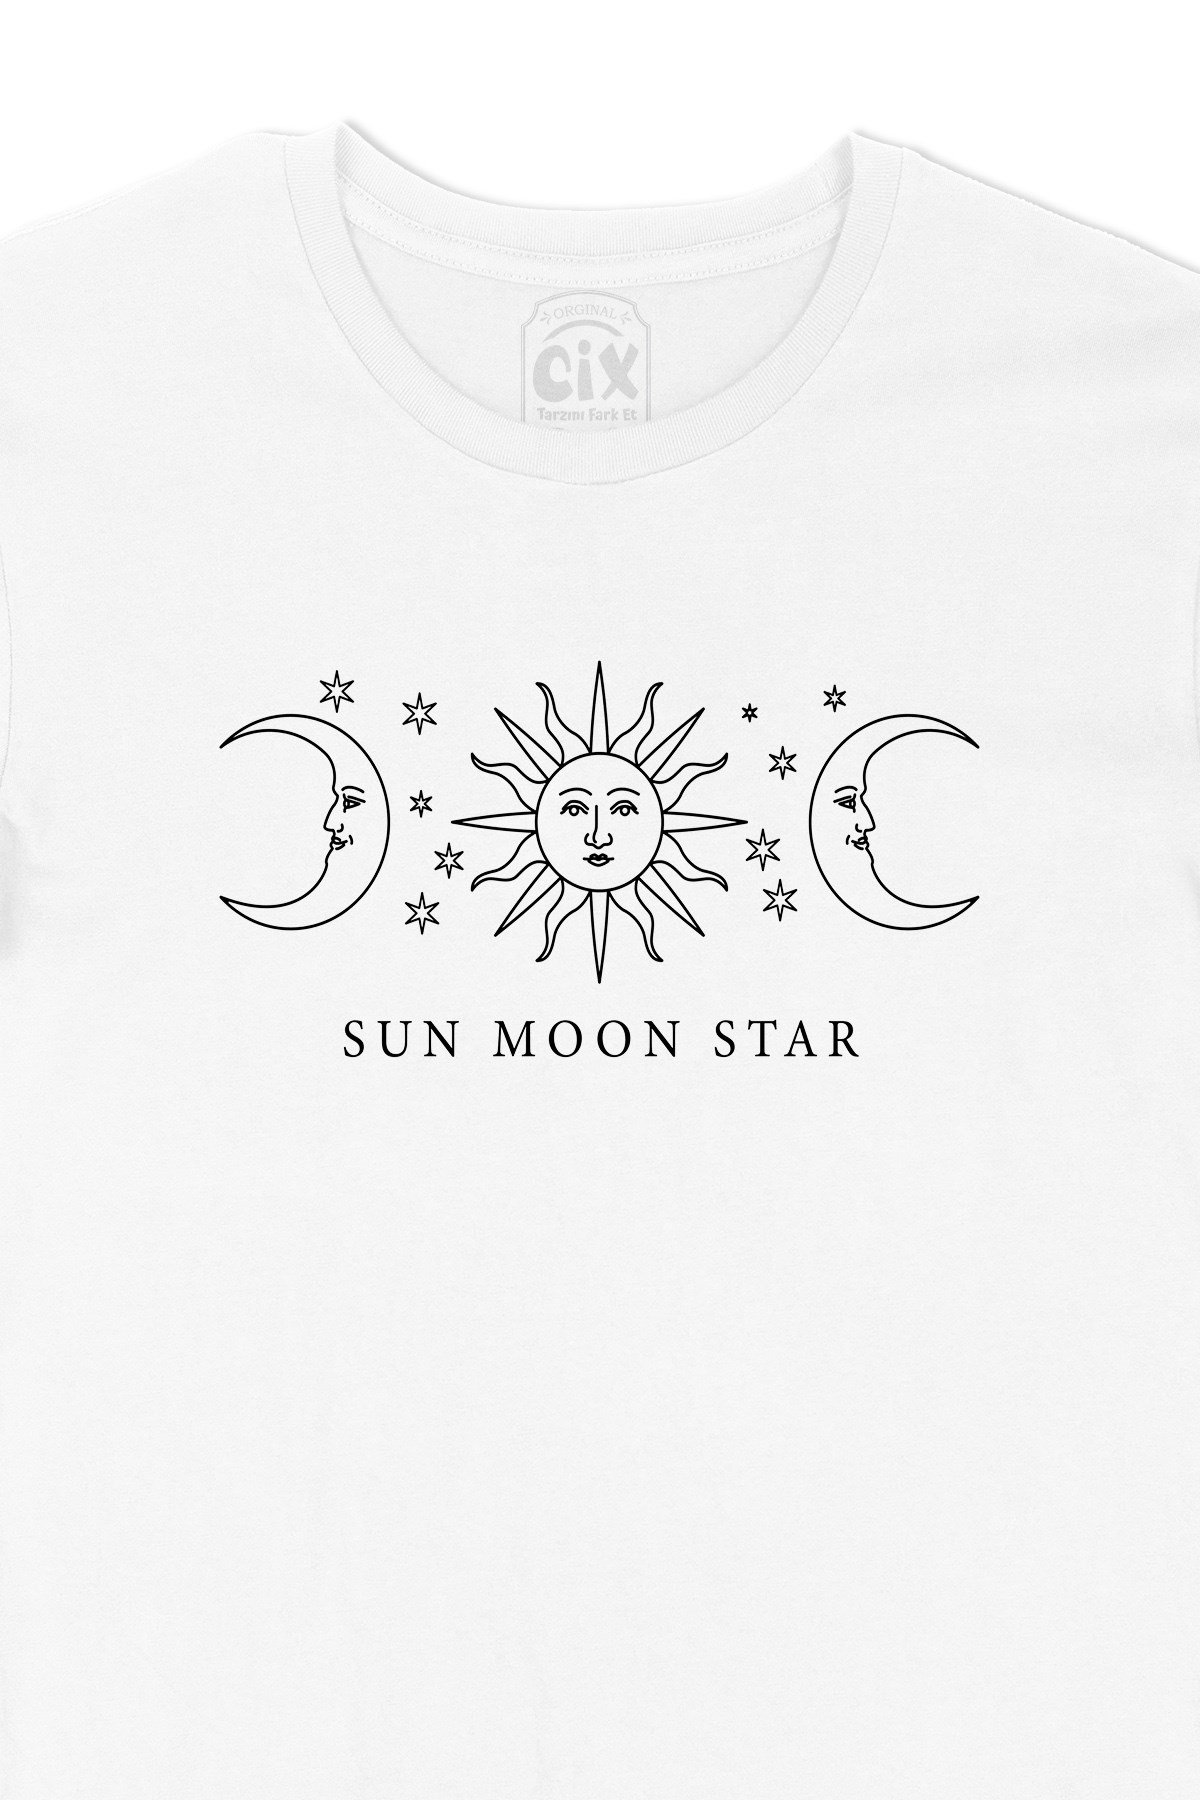 Cix Güneş Ay Yıldız Baskılı Tişört - Ücretsiz Kargo